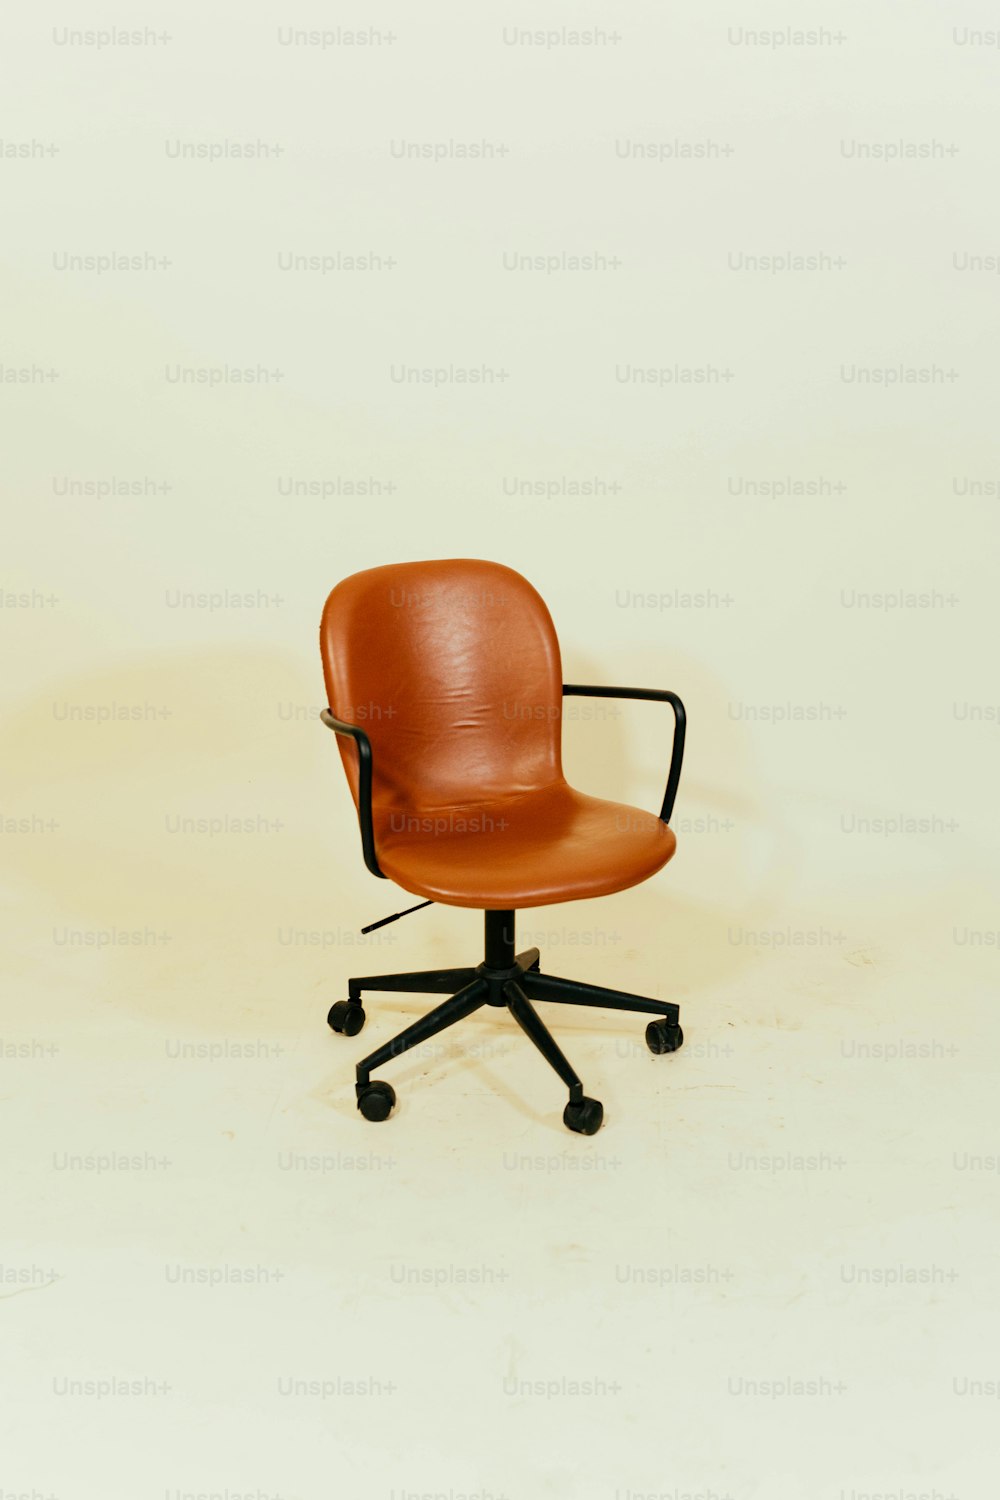 흰색 바닥 위에 앉아 있는 갈색 사무실 의자